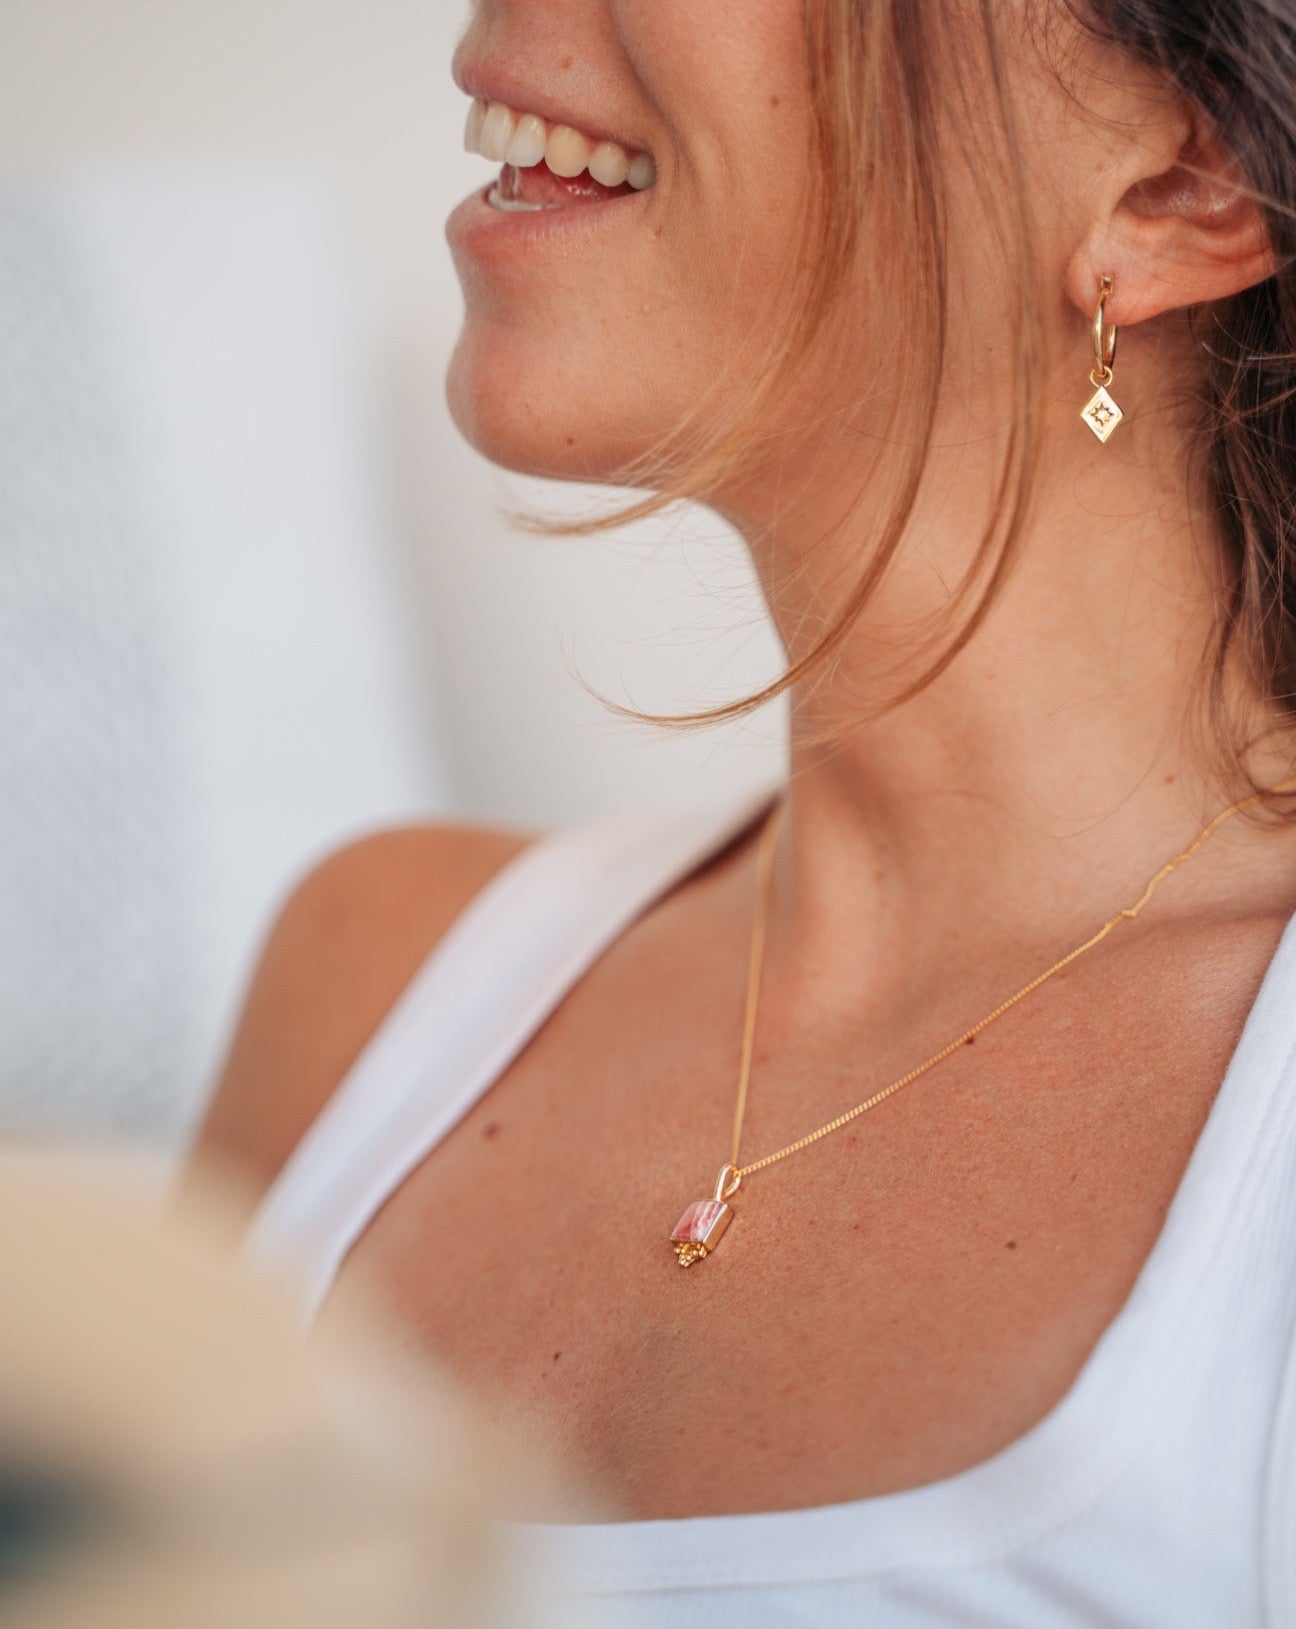 Goldene Kette mit Rhodochrosit Stein | Schmuck aus Bali | VERLAN Jewellery | das perfekte Geschenk für Freundin finden | Boho Schmuck